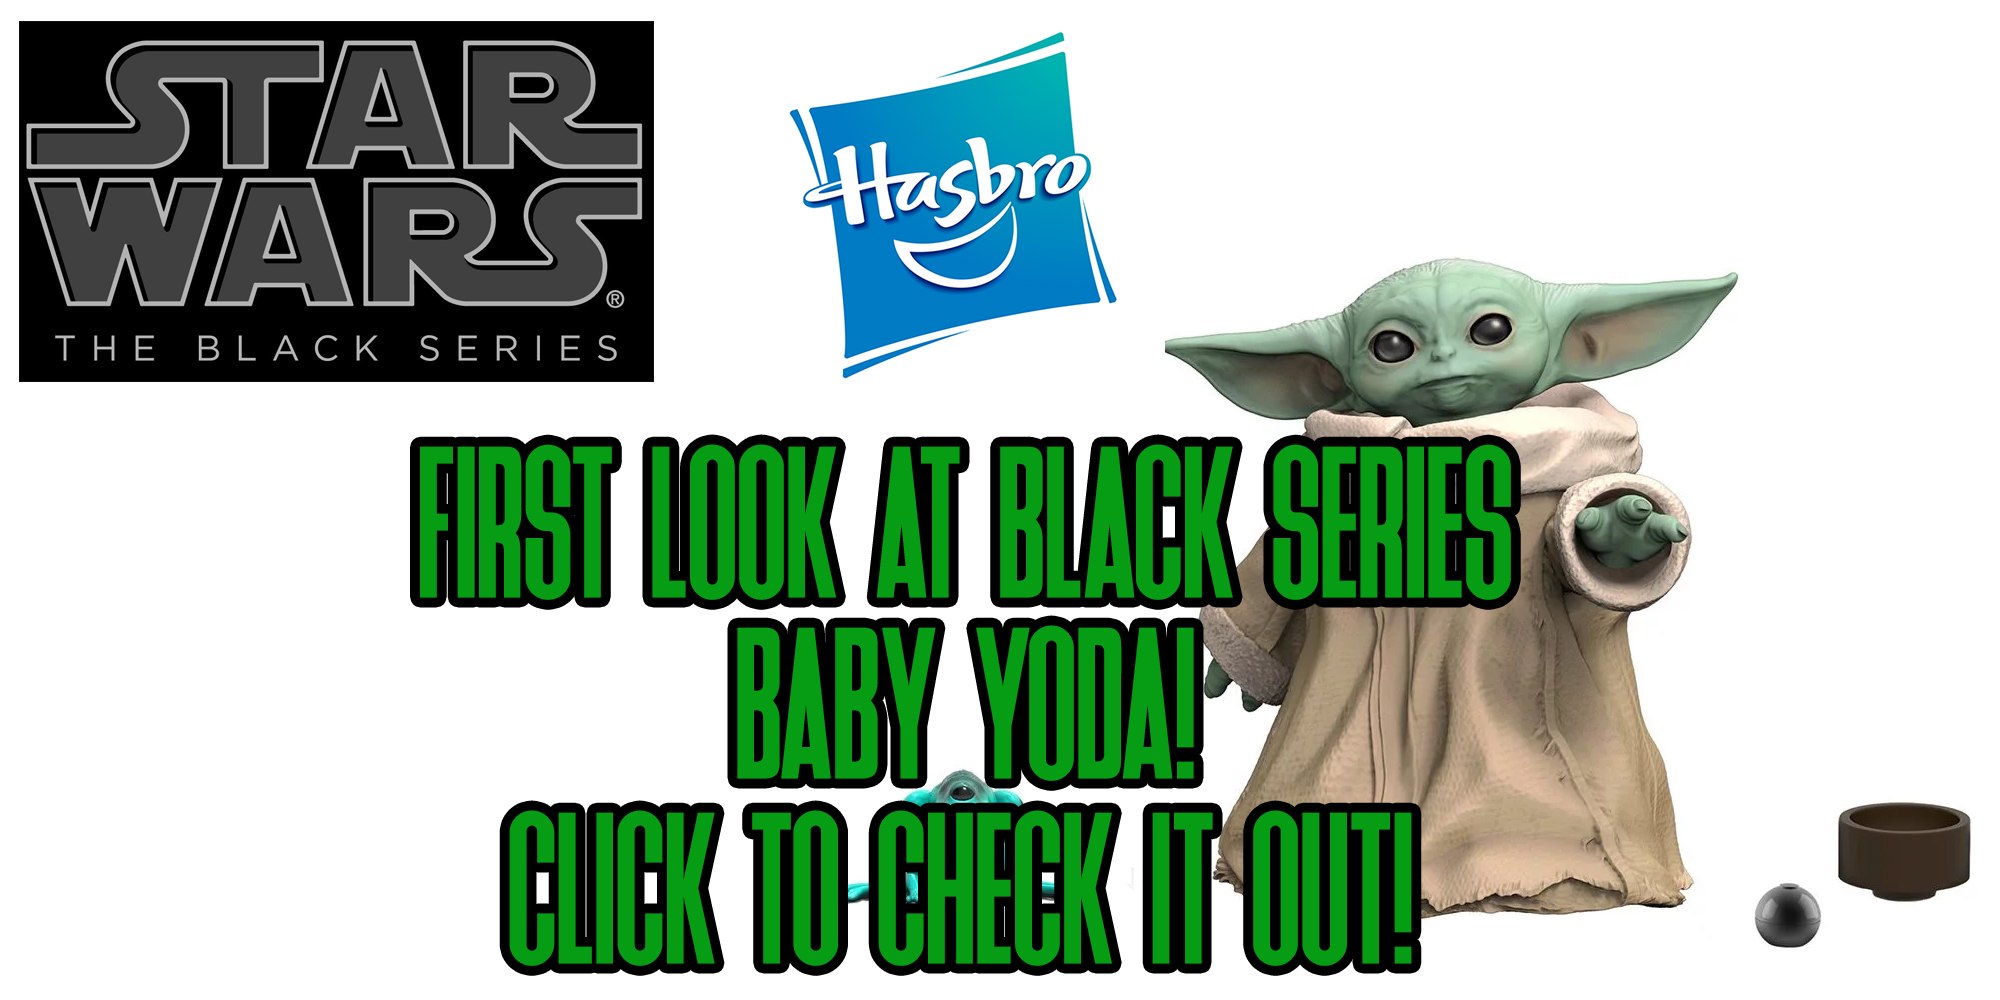 Black Series Baby Yoda Revealed!